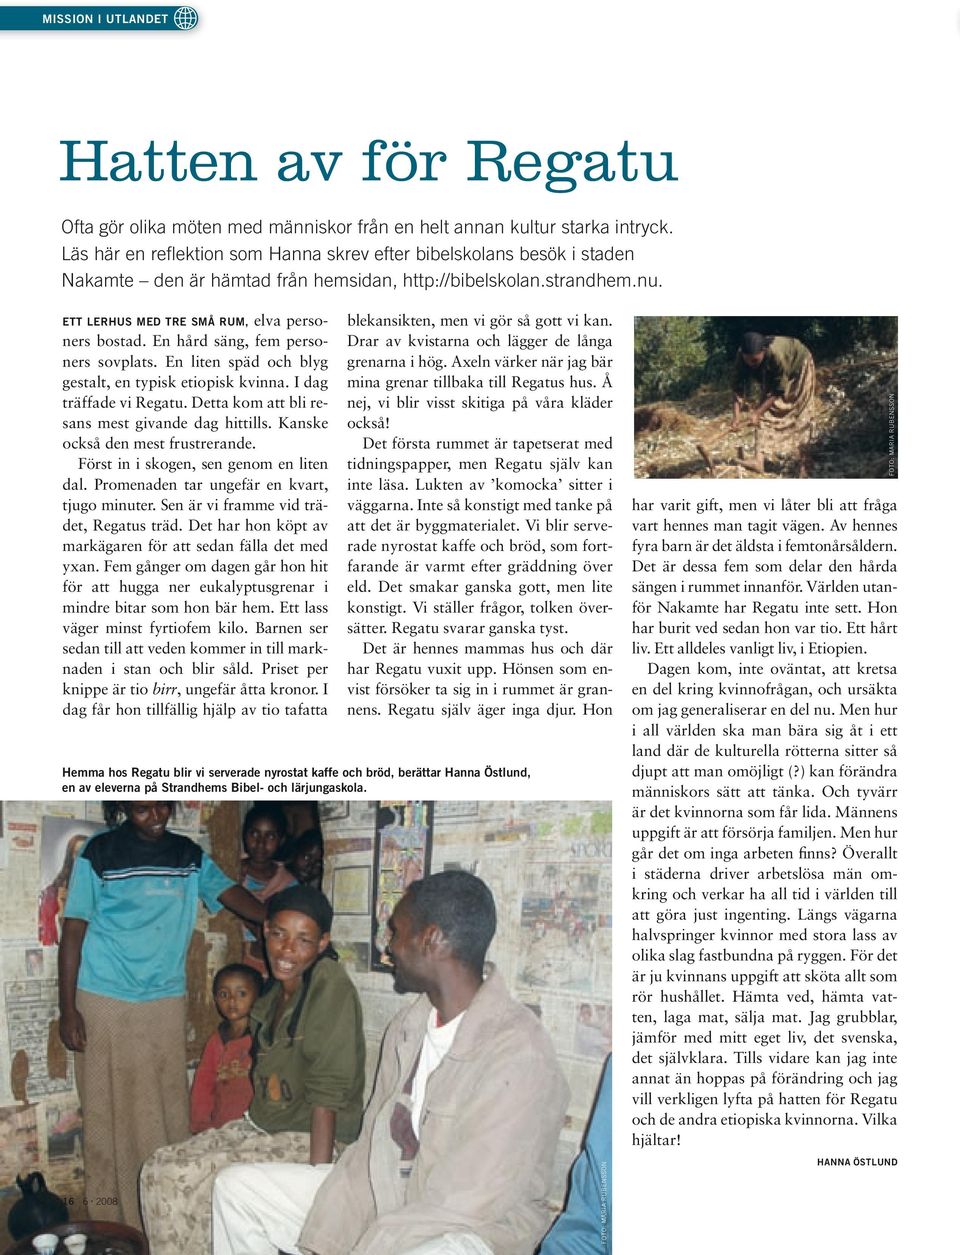 En hård säng, fem personers sovplats. En liten späd och blyg gestalt, en typisk etiopisk kvinna. I dag träffade vi Regatu. Detta kom att bli resans mest givande dag hittills.